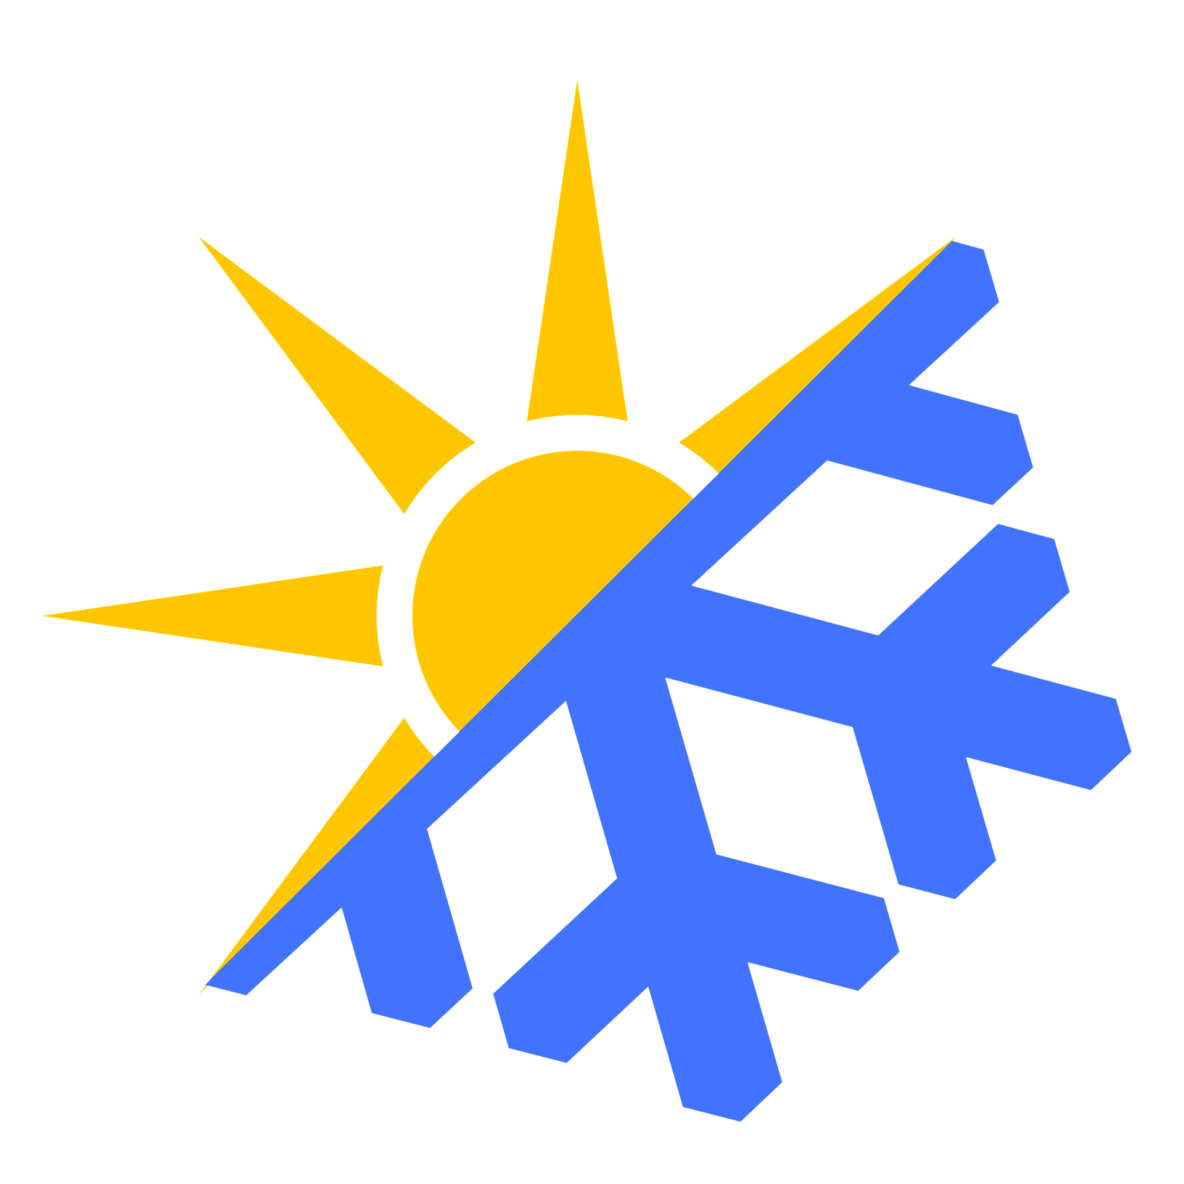 Sun and snowflake